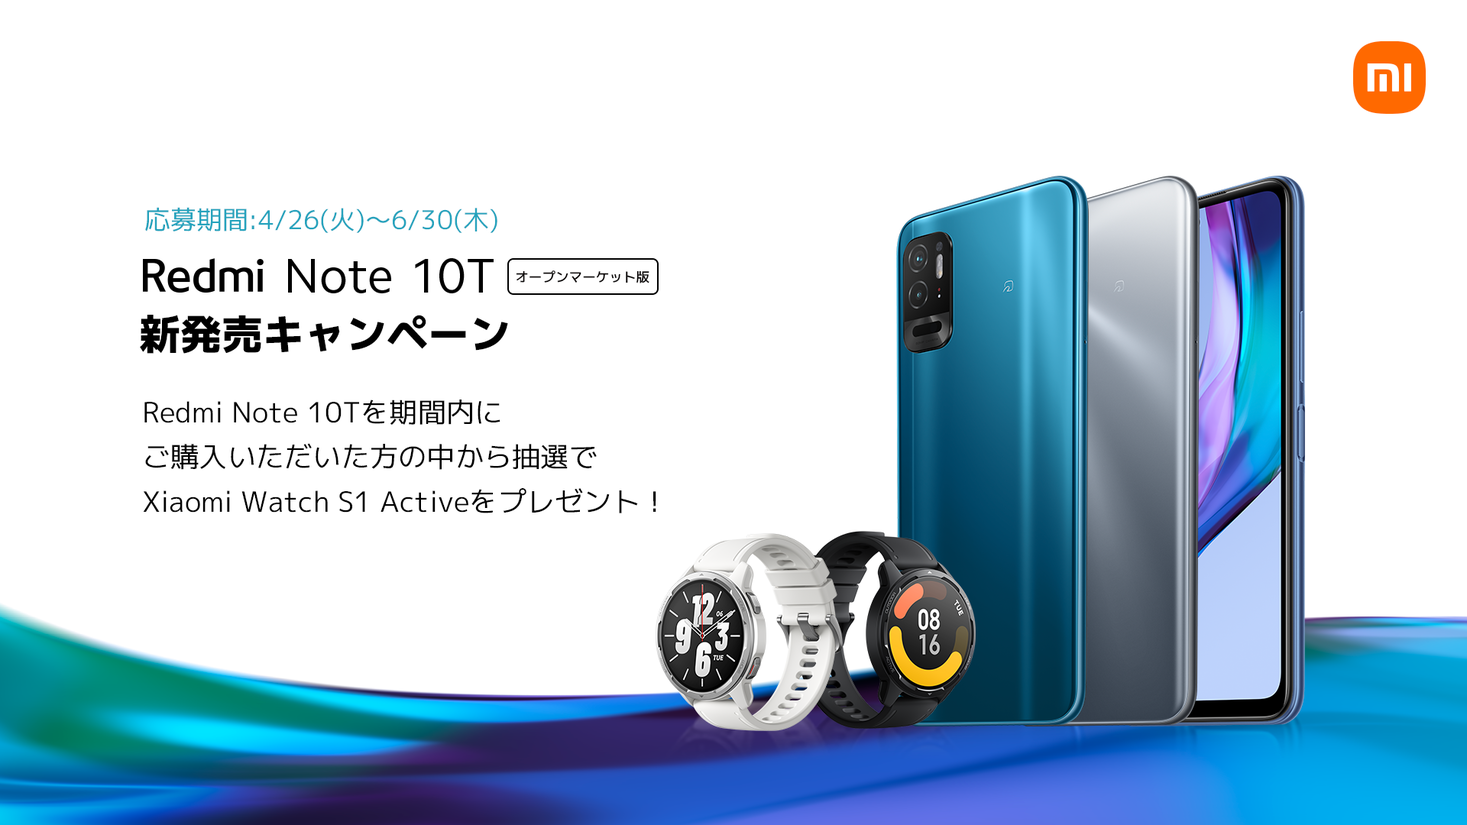 本日よりRedmi Note 10T 新発売キャンペーンの応募・抽選が開始